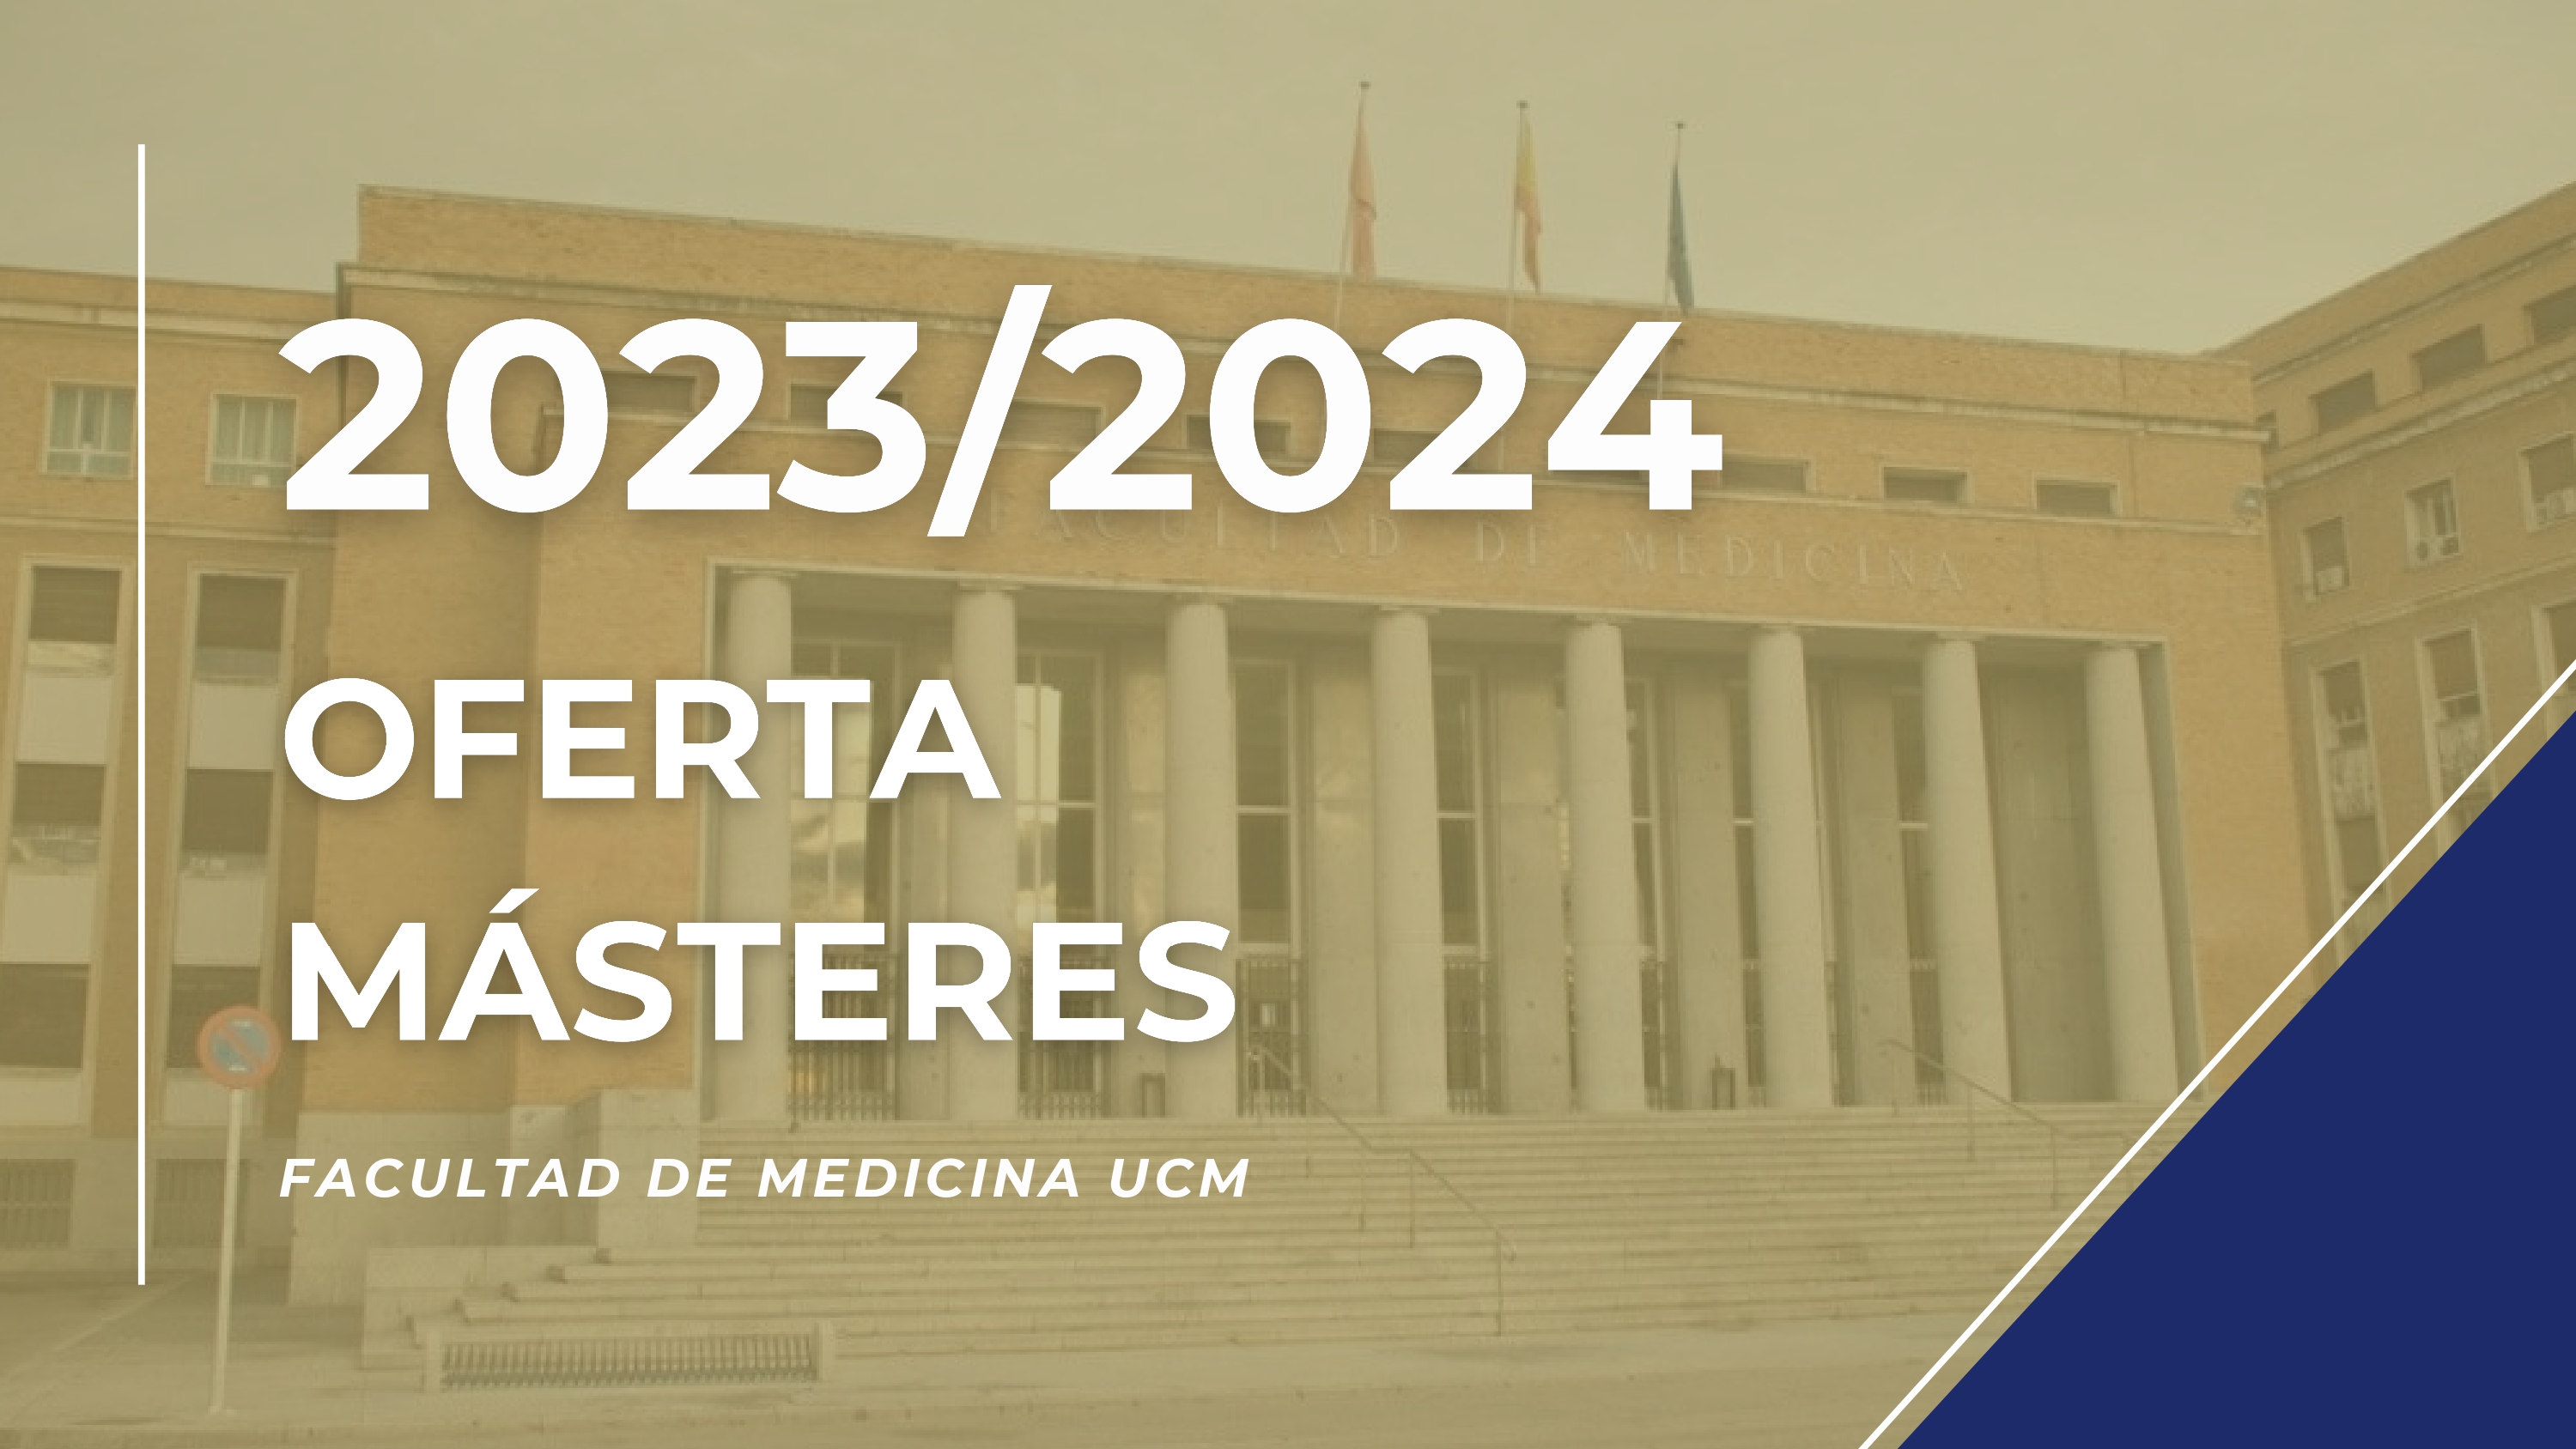 OFERTA MÁSTERES FACULTAD DE MEDICINA. CURSO 2023/2024 - 1